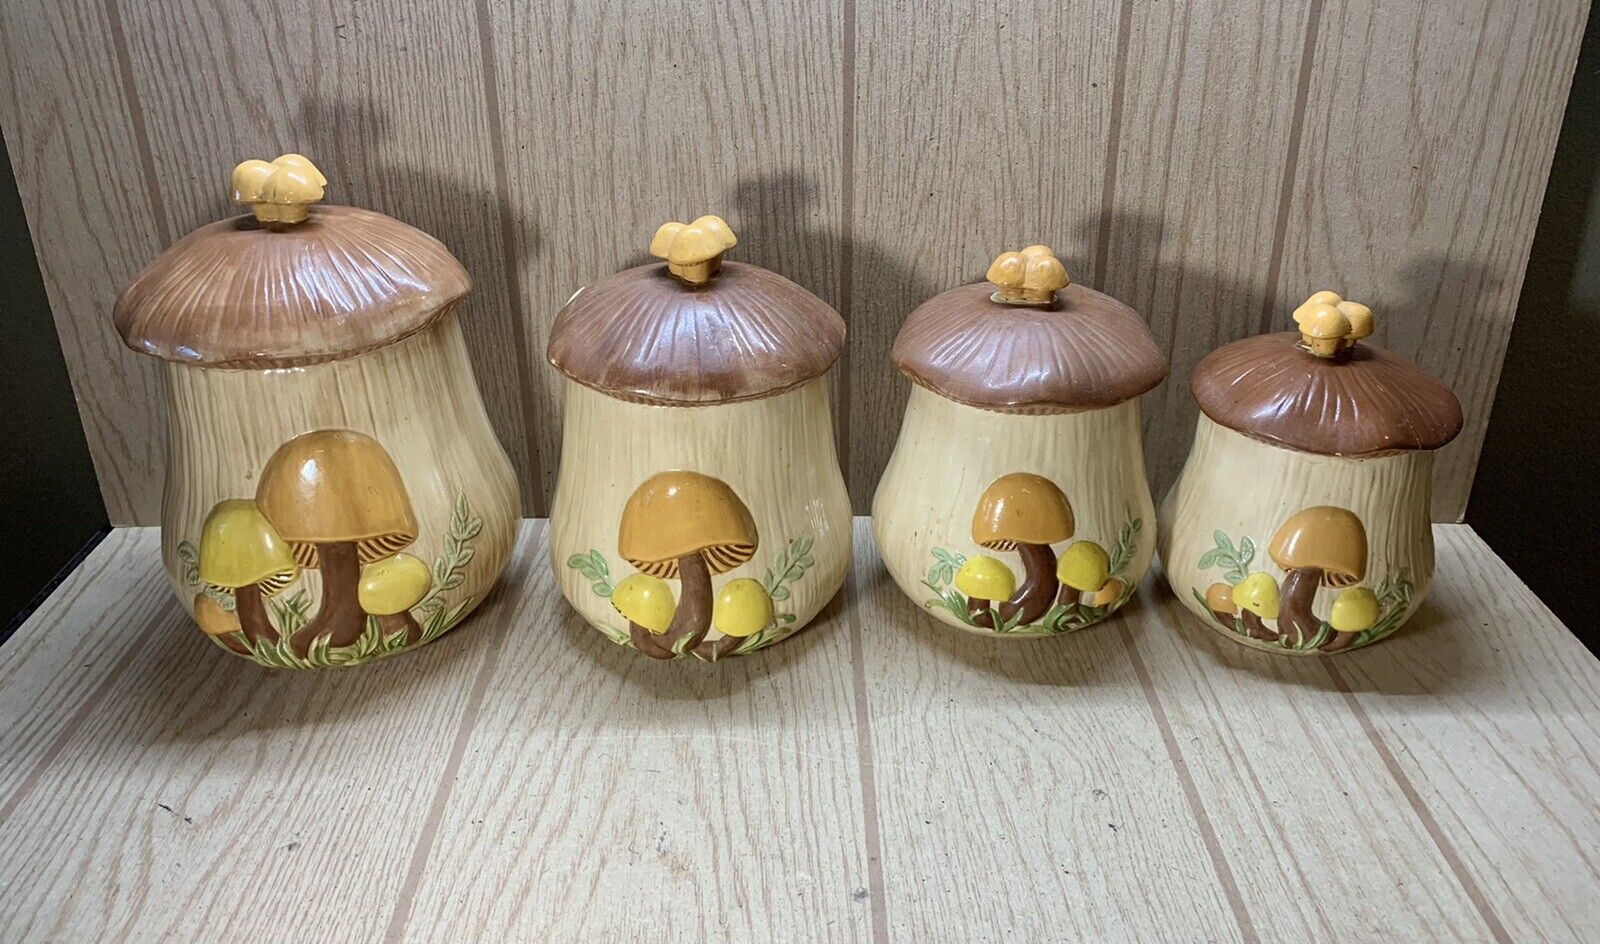 Vtg Arnel’s Mushroom Canister Set Ceramic Retro 1970s Kitchen Set of 4